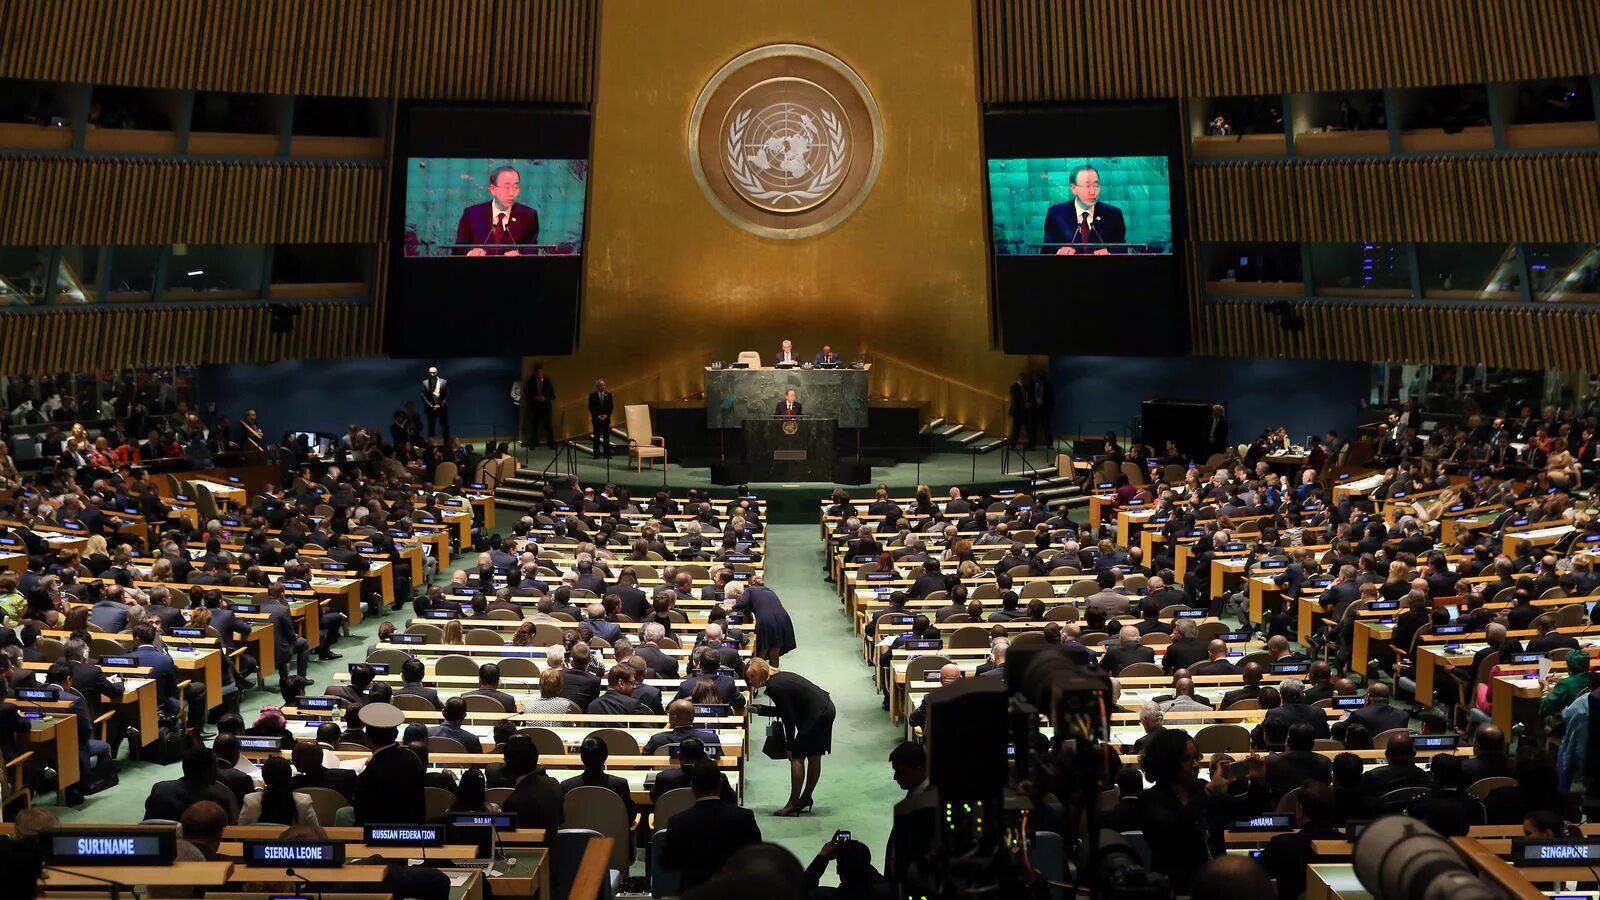 Генеральная Ассамблея ООН 2005. Трибуна Генассамблеи ООН. Зал заседания Генассамблеи ООН трибуна. Оон показала